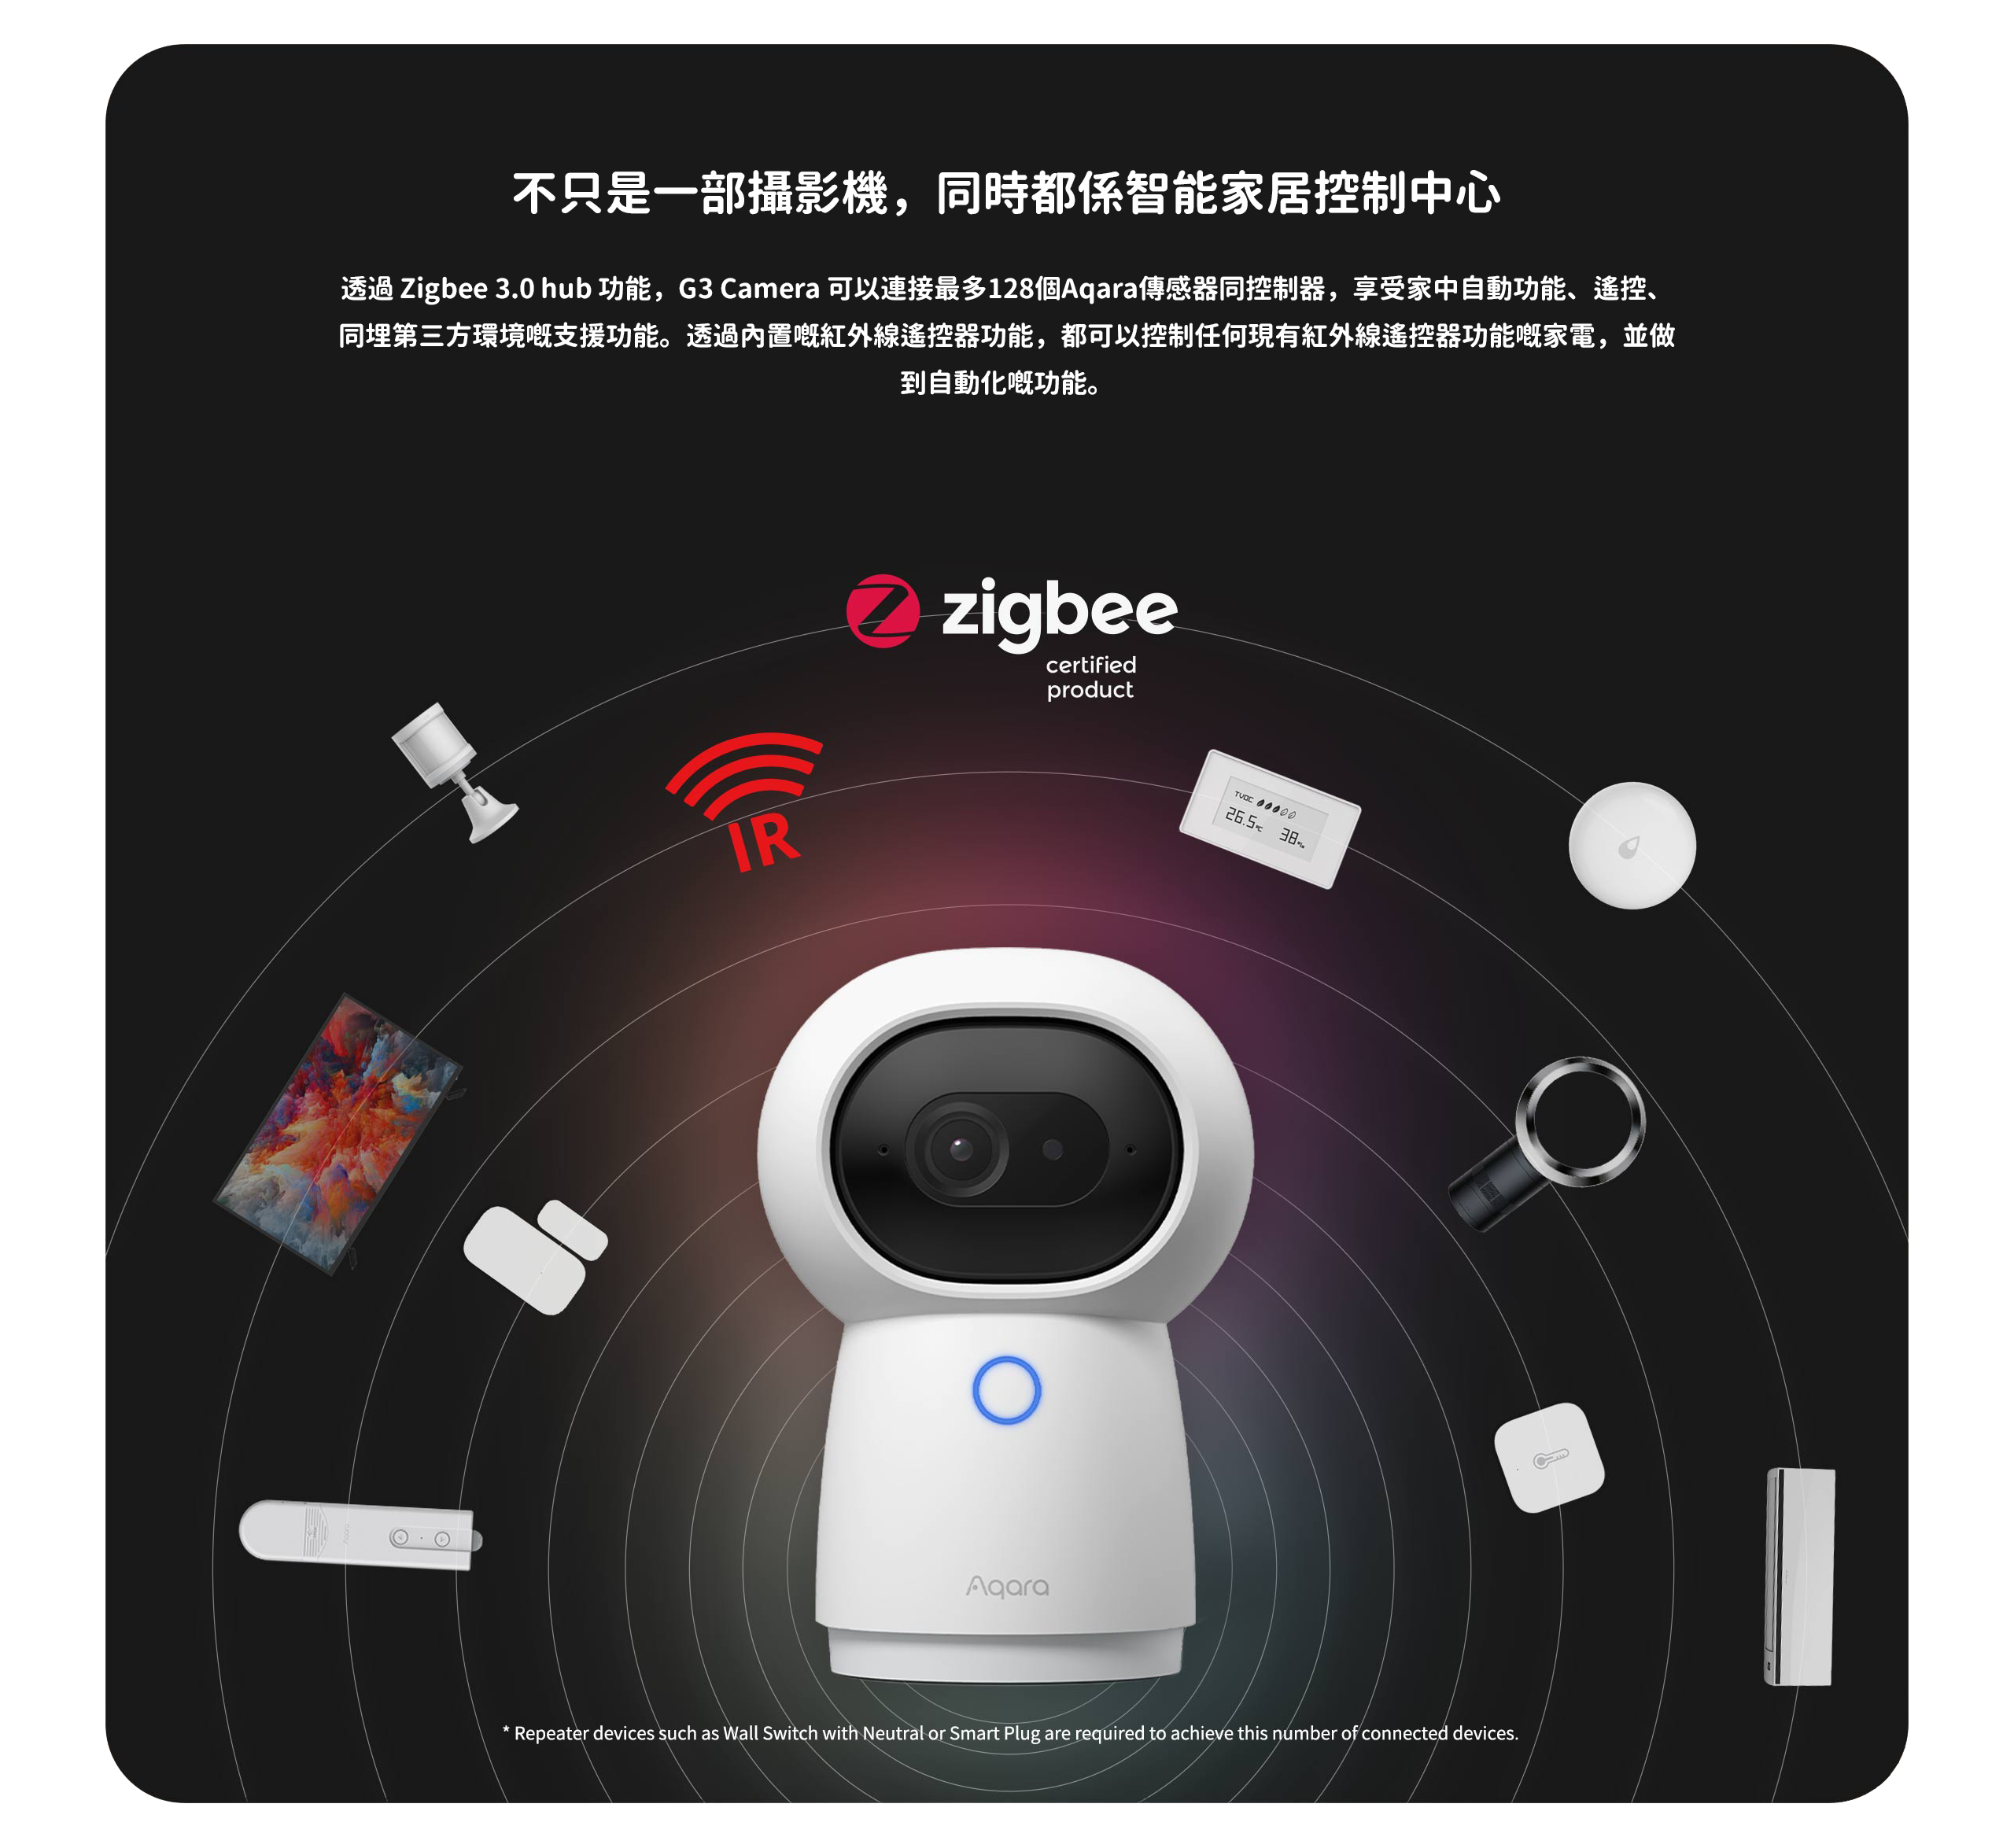 透過 Zigbee 3.0 hub 功能，G3 Camera 可以連接最多128個Aqara傳感器同控制器，享受家中自動功能、遙控、同埋第三方環境嘅支援功能。透過內置嘅紅外線遙控器功能，都可以控制任何現有紅外線遙控器功能嘅家電，並做到自動化嘅功能。